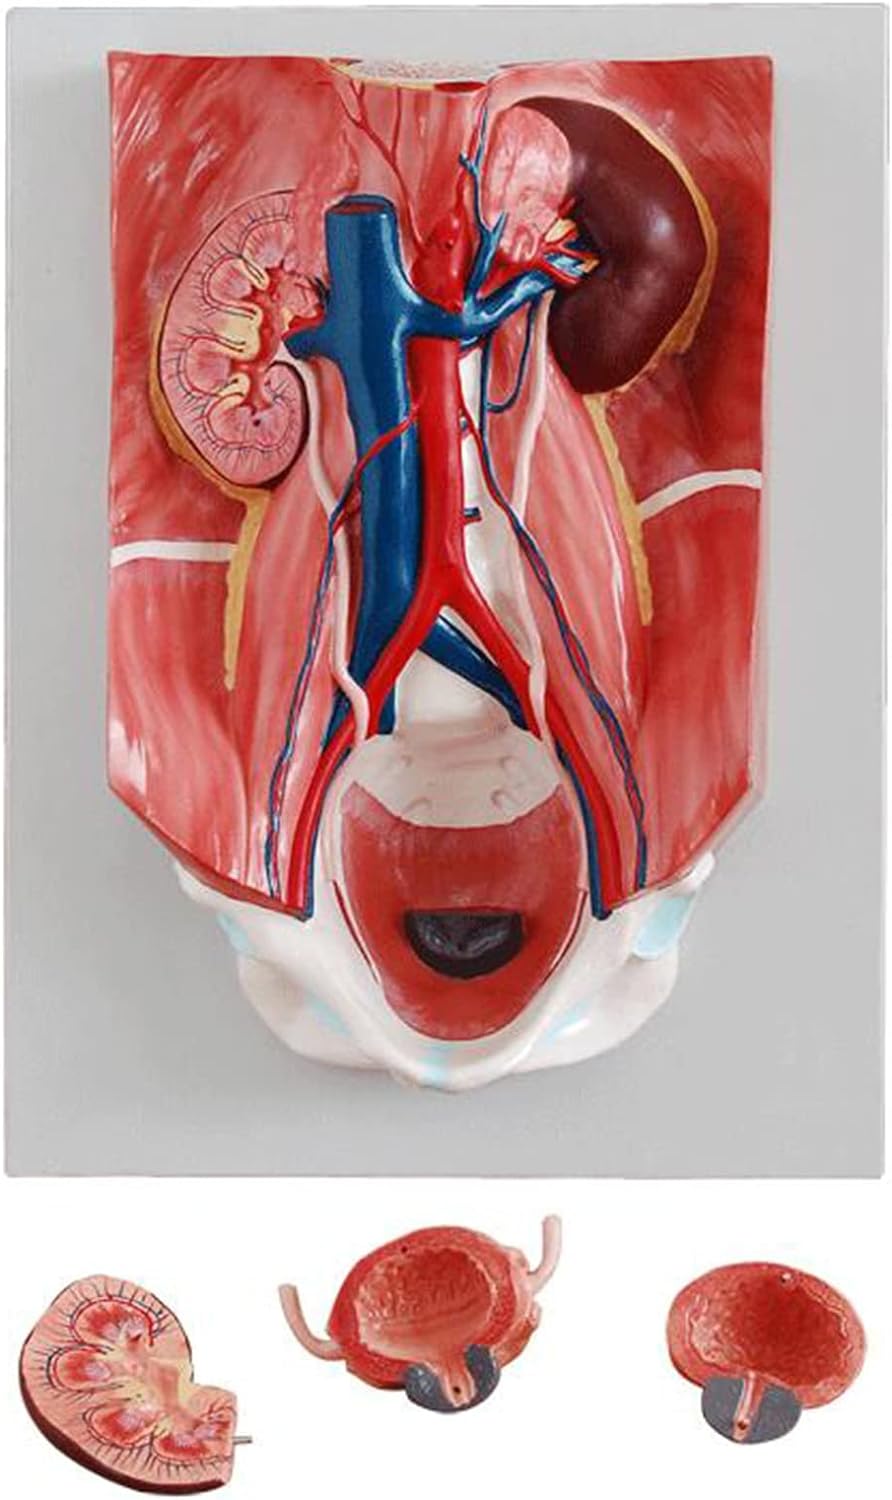 Tib neeg Urinary System Model - Tib Neeg Vesicoureteral Vascular Teaching Model - Raum Lub Cev Lub Cev Cov Qauv Anatomy rau Kev Kawm Kho Mob thiab Kev Kawm